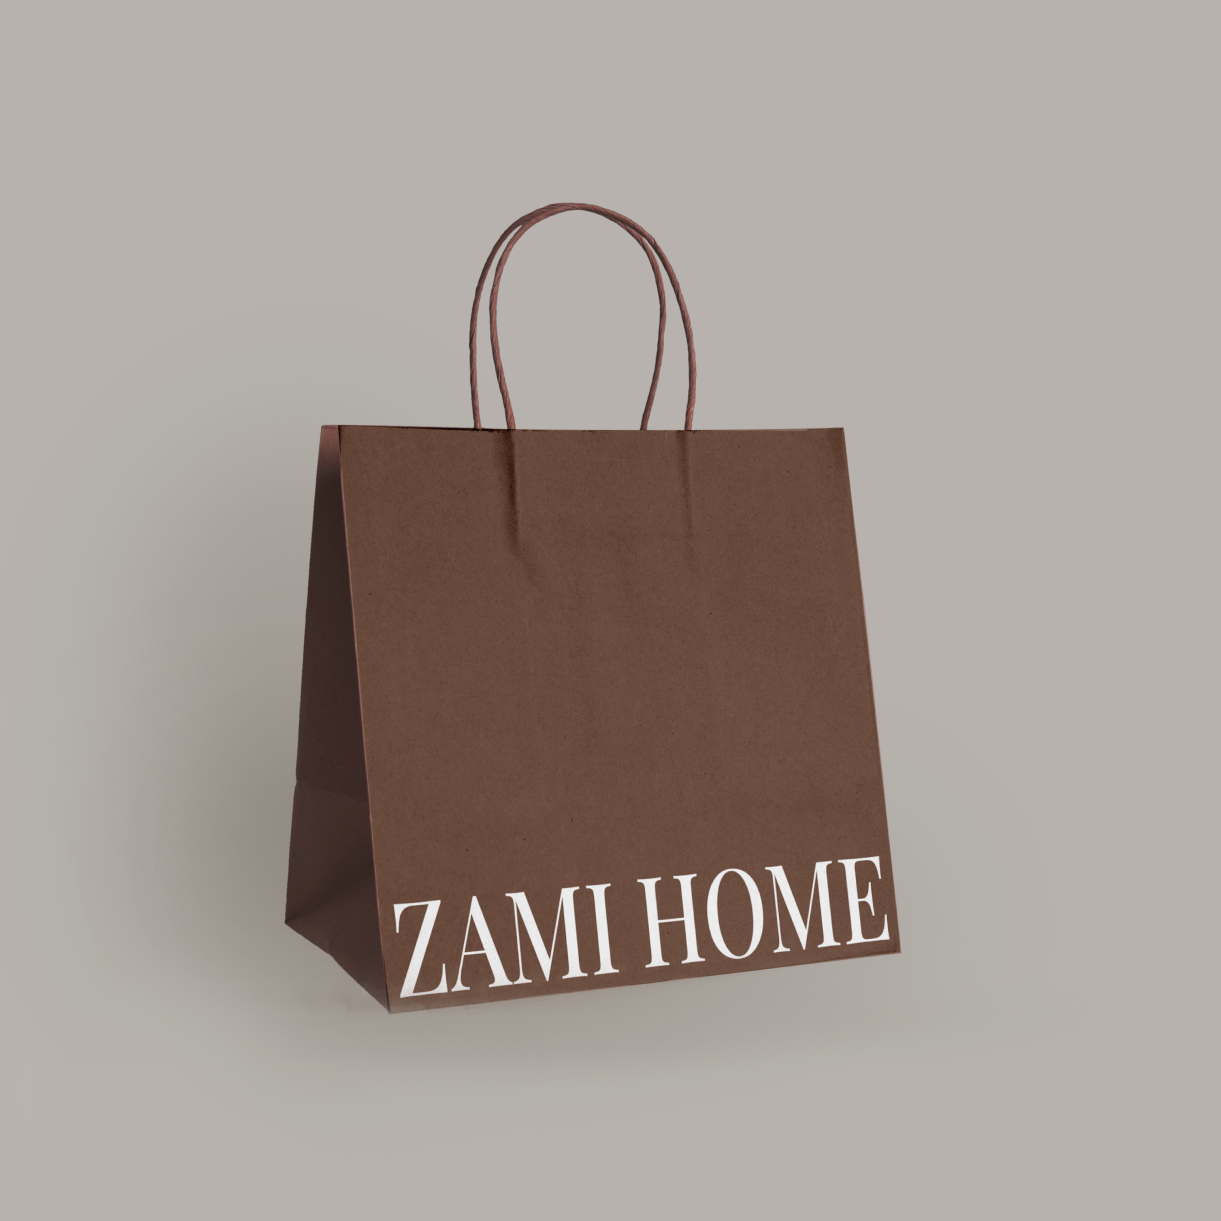 ZAMI HOME — Изображение №7 — Брендинг, Графика на Dprofile